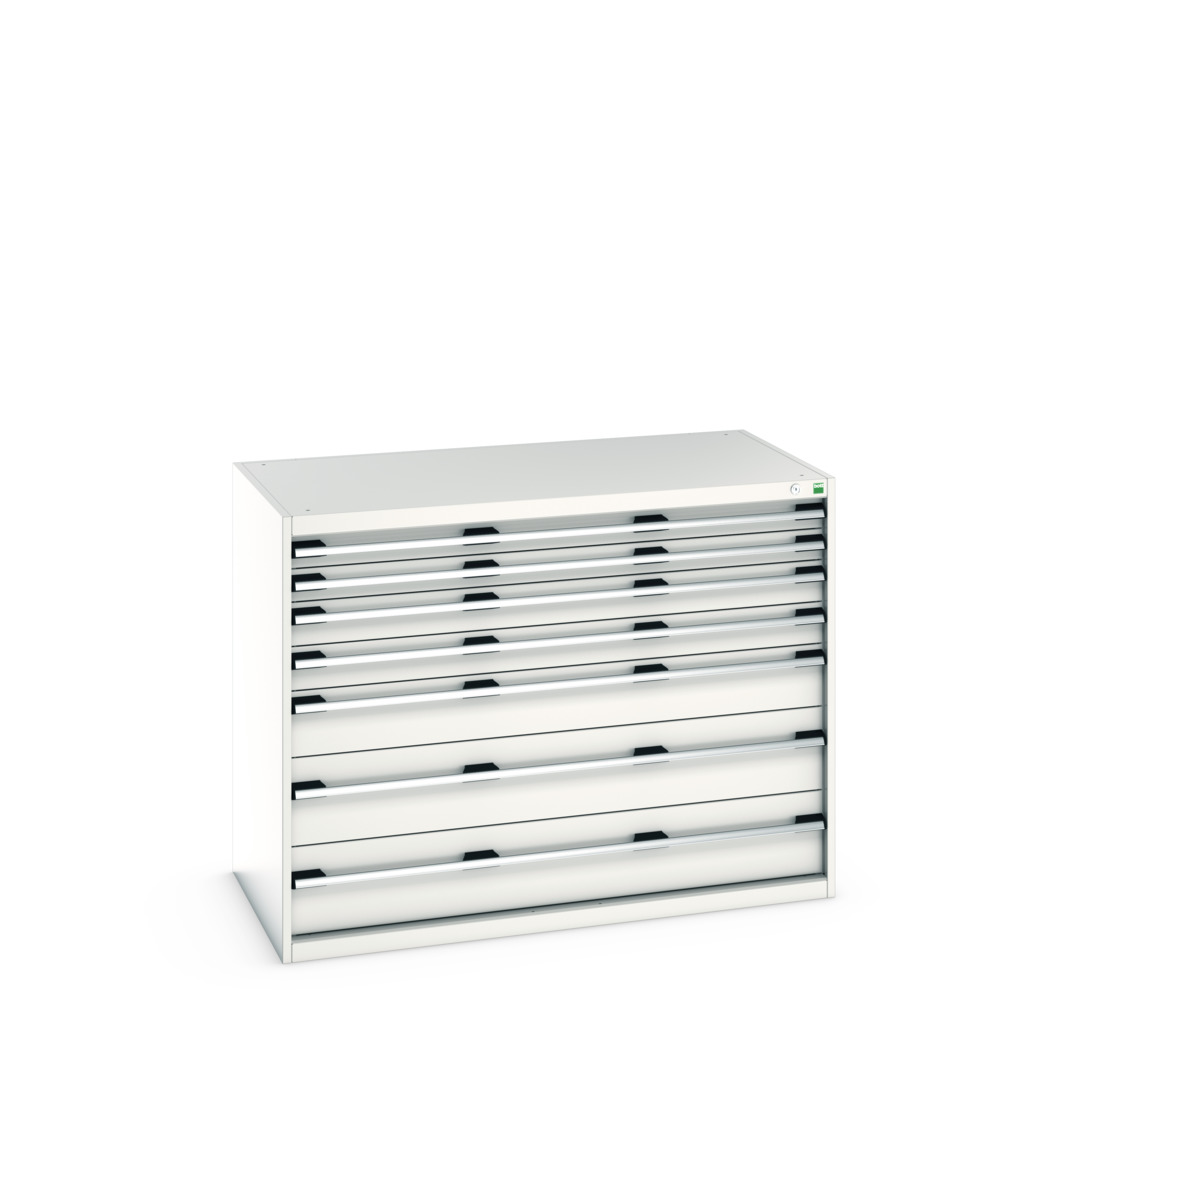 40030016.16V - cubio drawer cabinet